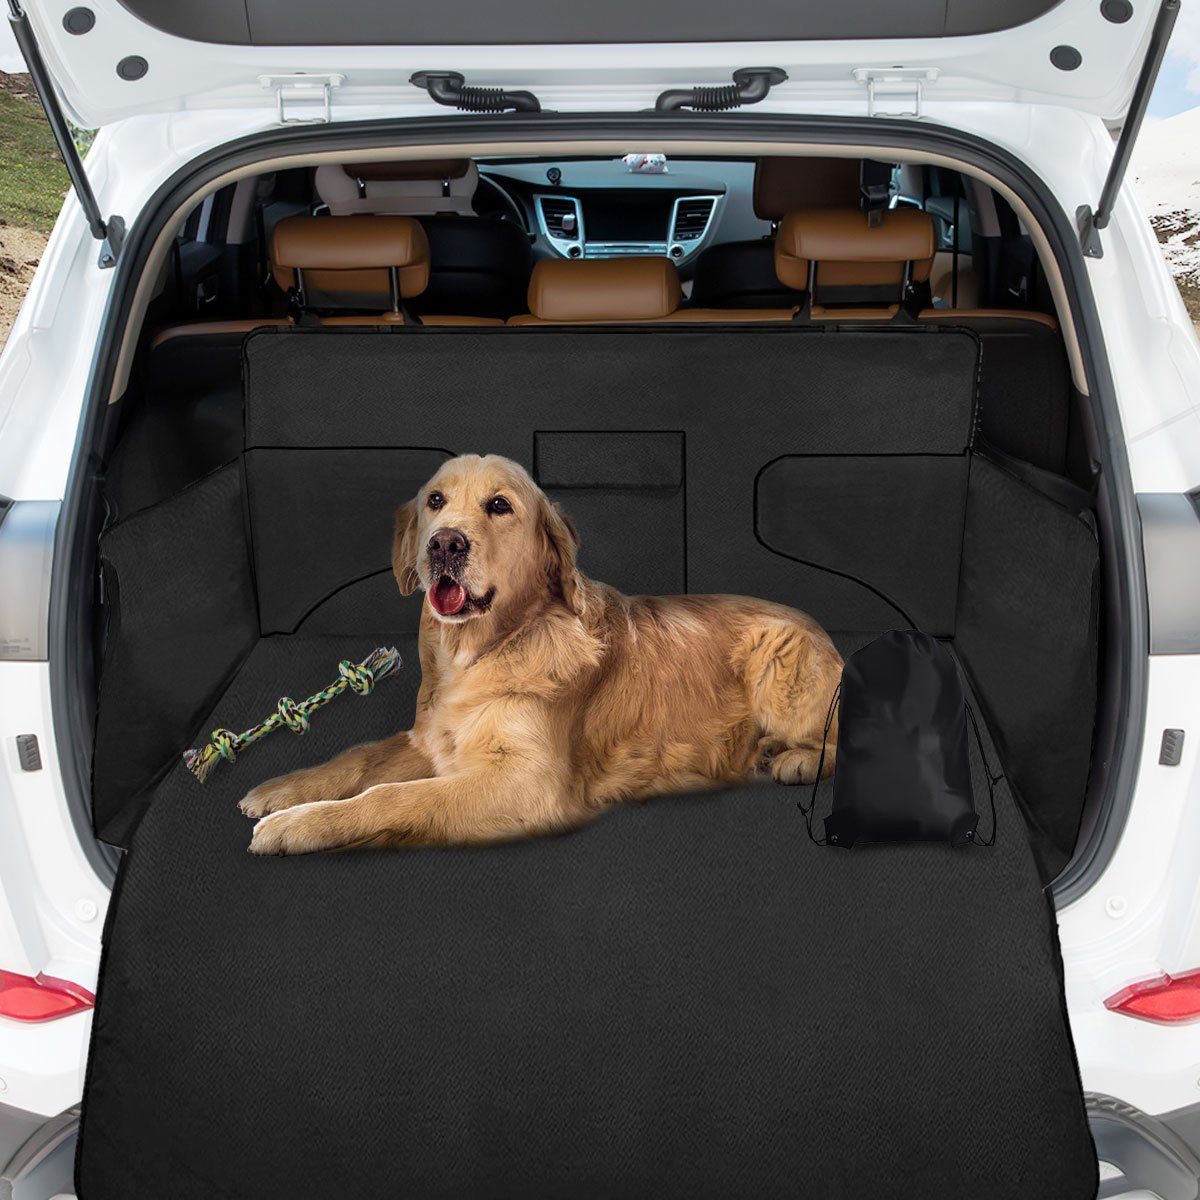 Auto Kofferraum Hunde Schutzdecke 175cm